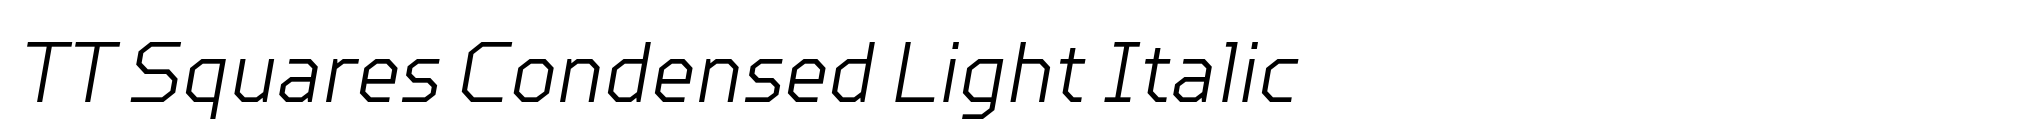 TT Squares Condensed Light Italic image